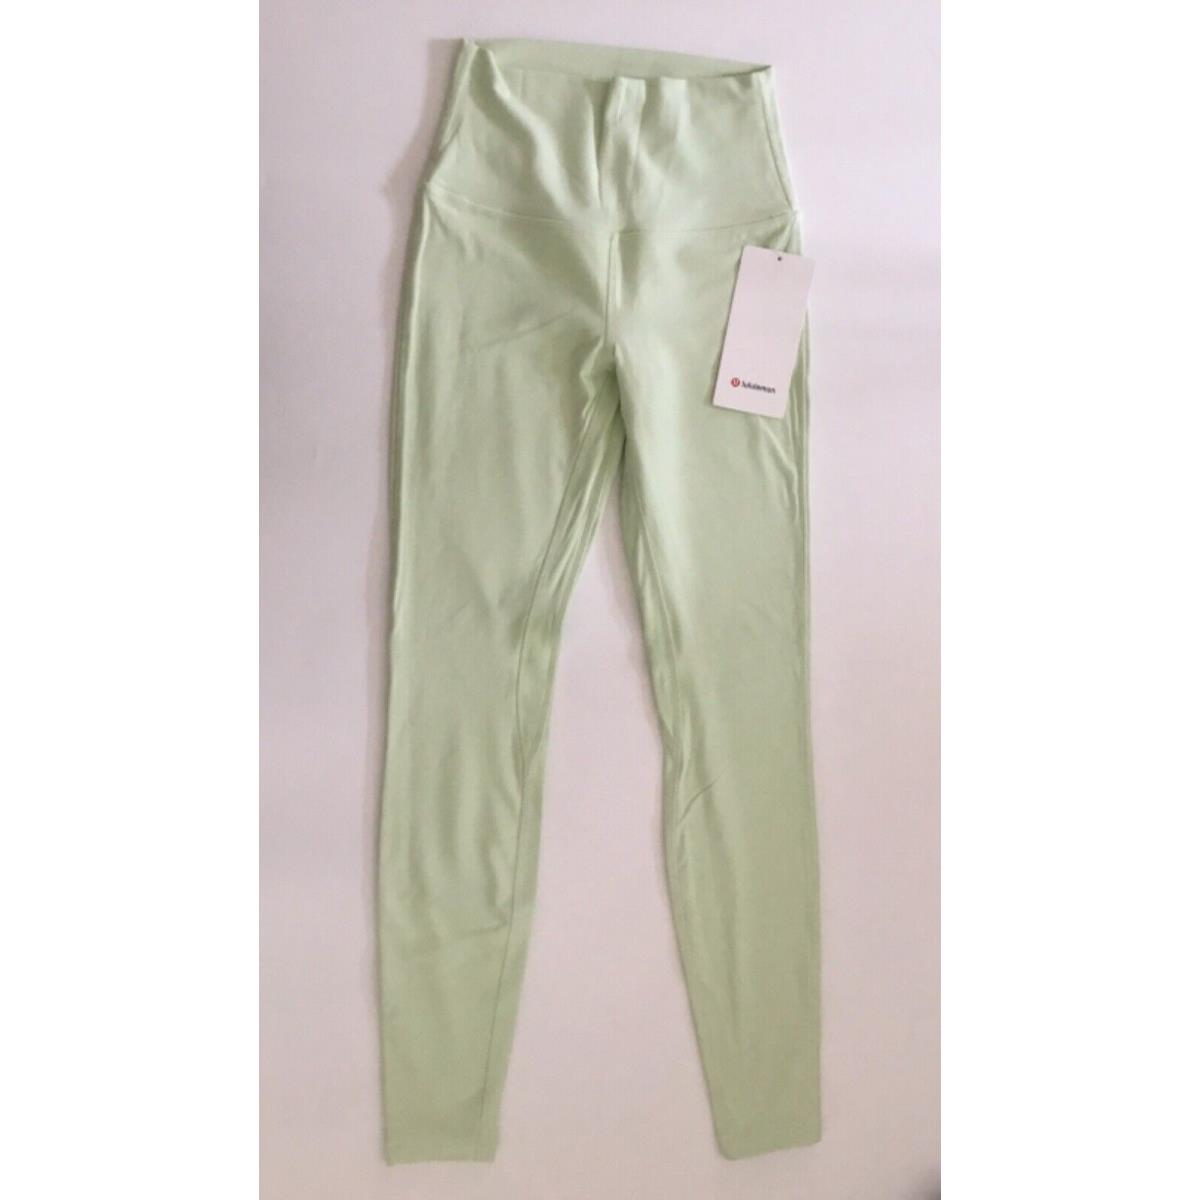 Lululemon Women s Align Pant 28 Length Nulu LW5CTIS Kogr Green Size 4